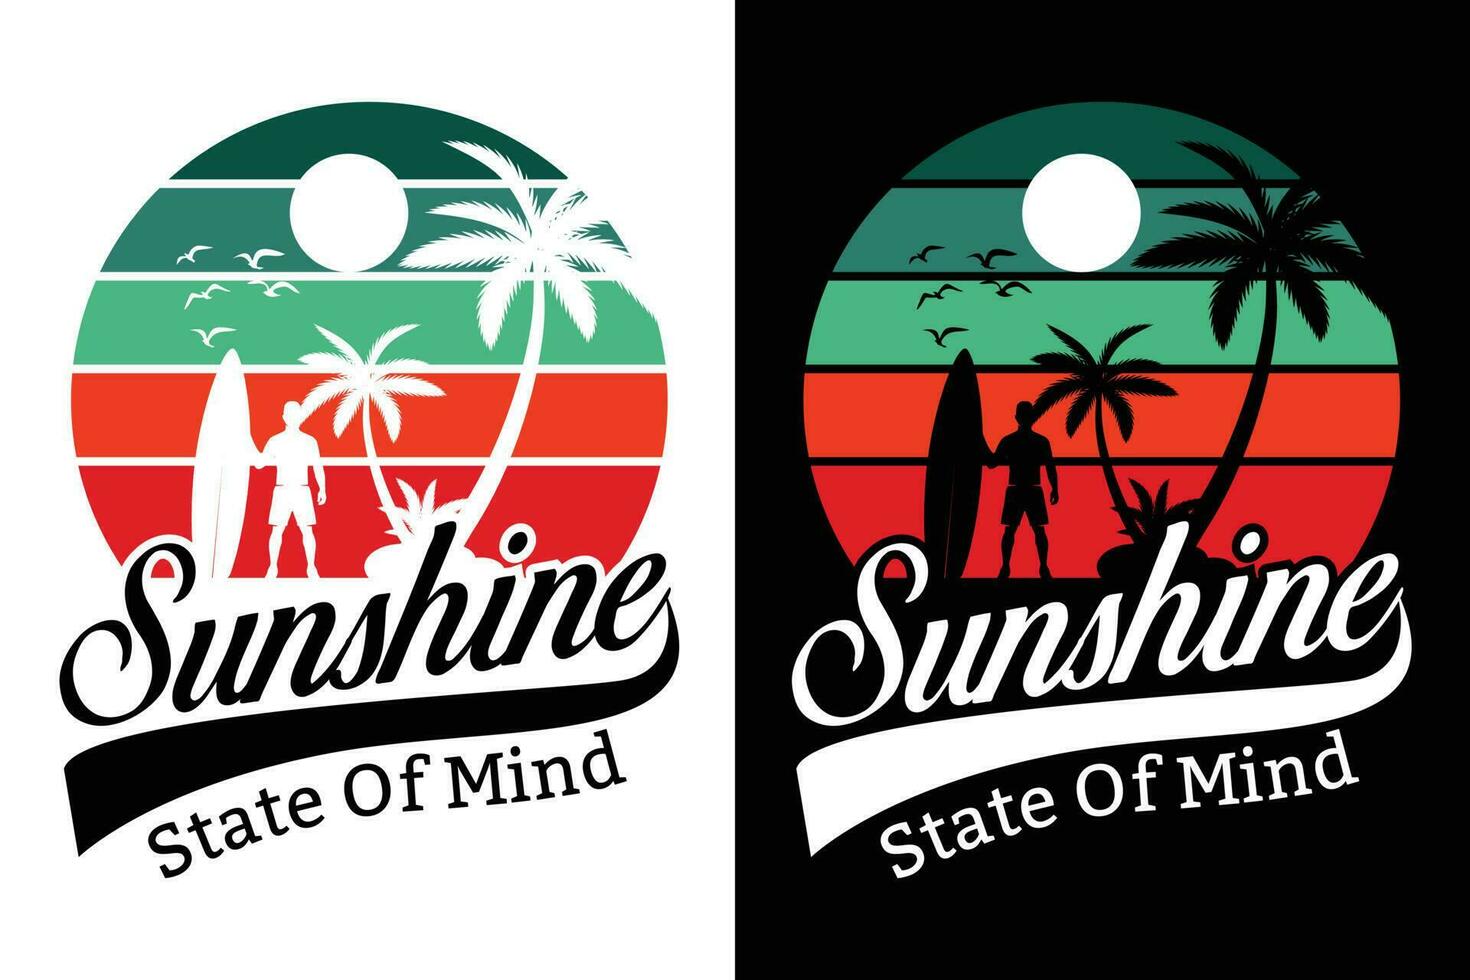 verão camiseta projeto, verão de praia período de férias Camisetas, verão surfar camiseta vetor Projeto